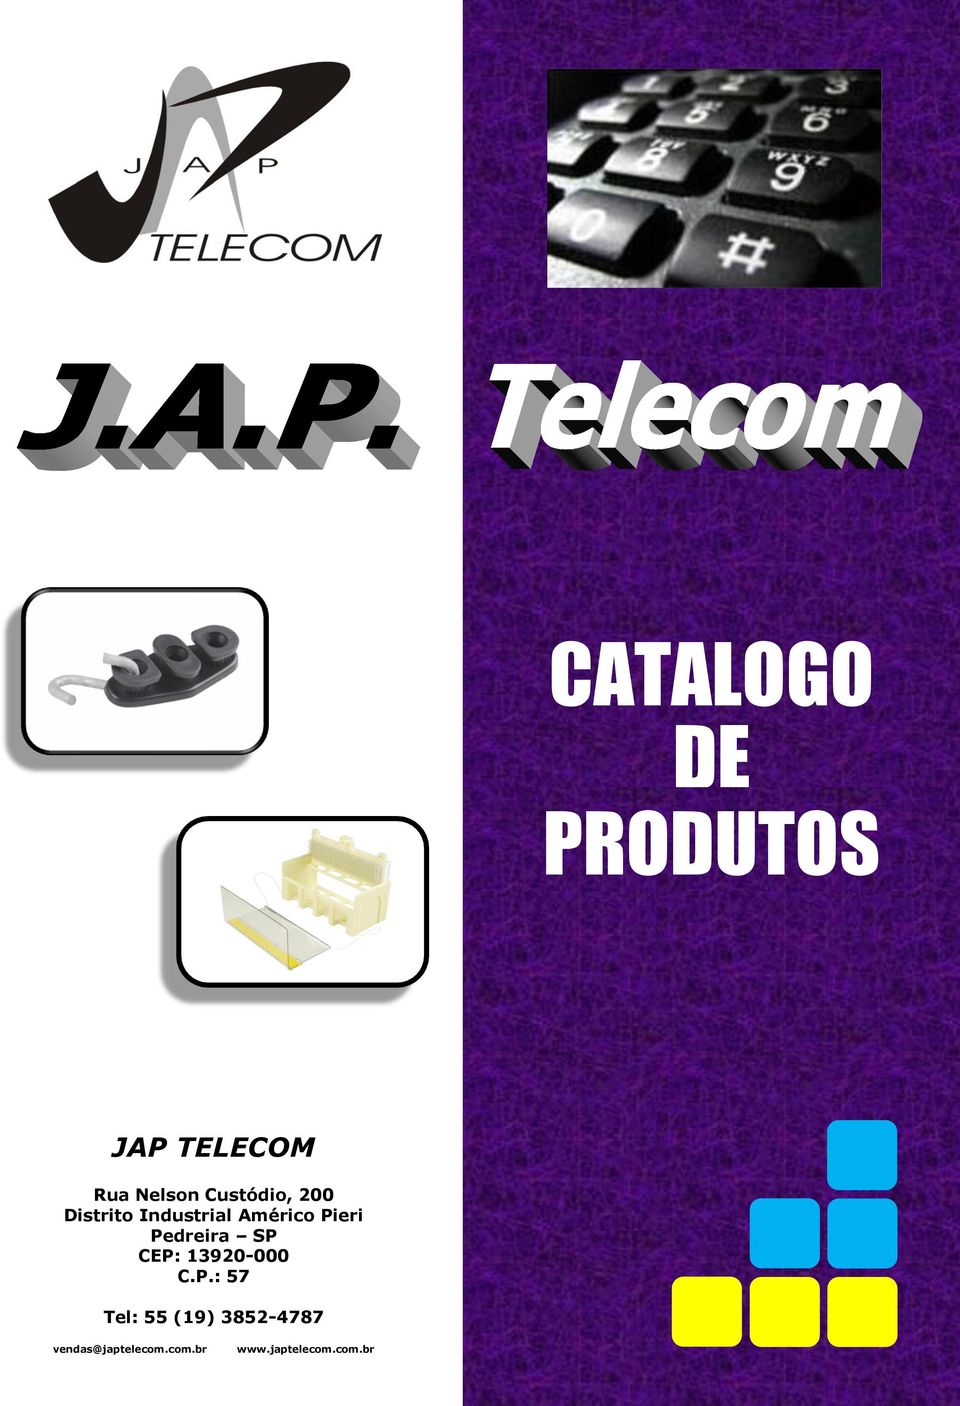 Pedreira SP CEP: 13920-000 C.P.: 57 Tel: 55 (19) 3852-4787 vendas@japtelecom.